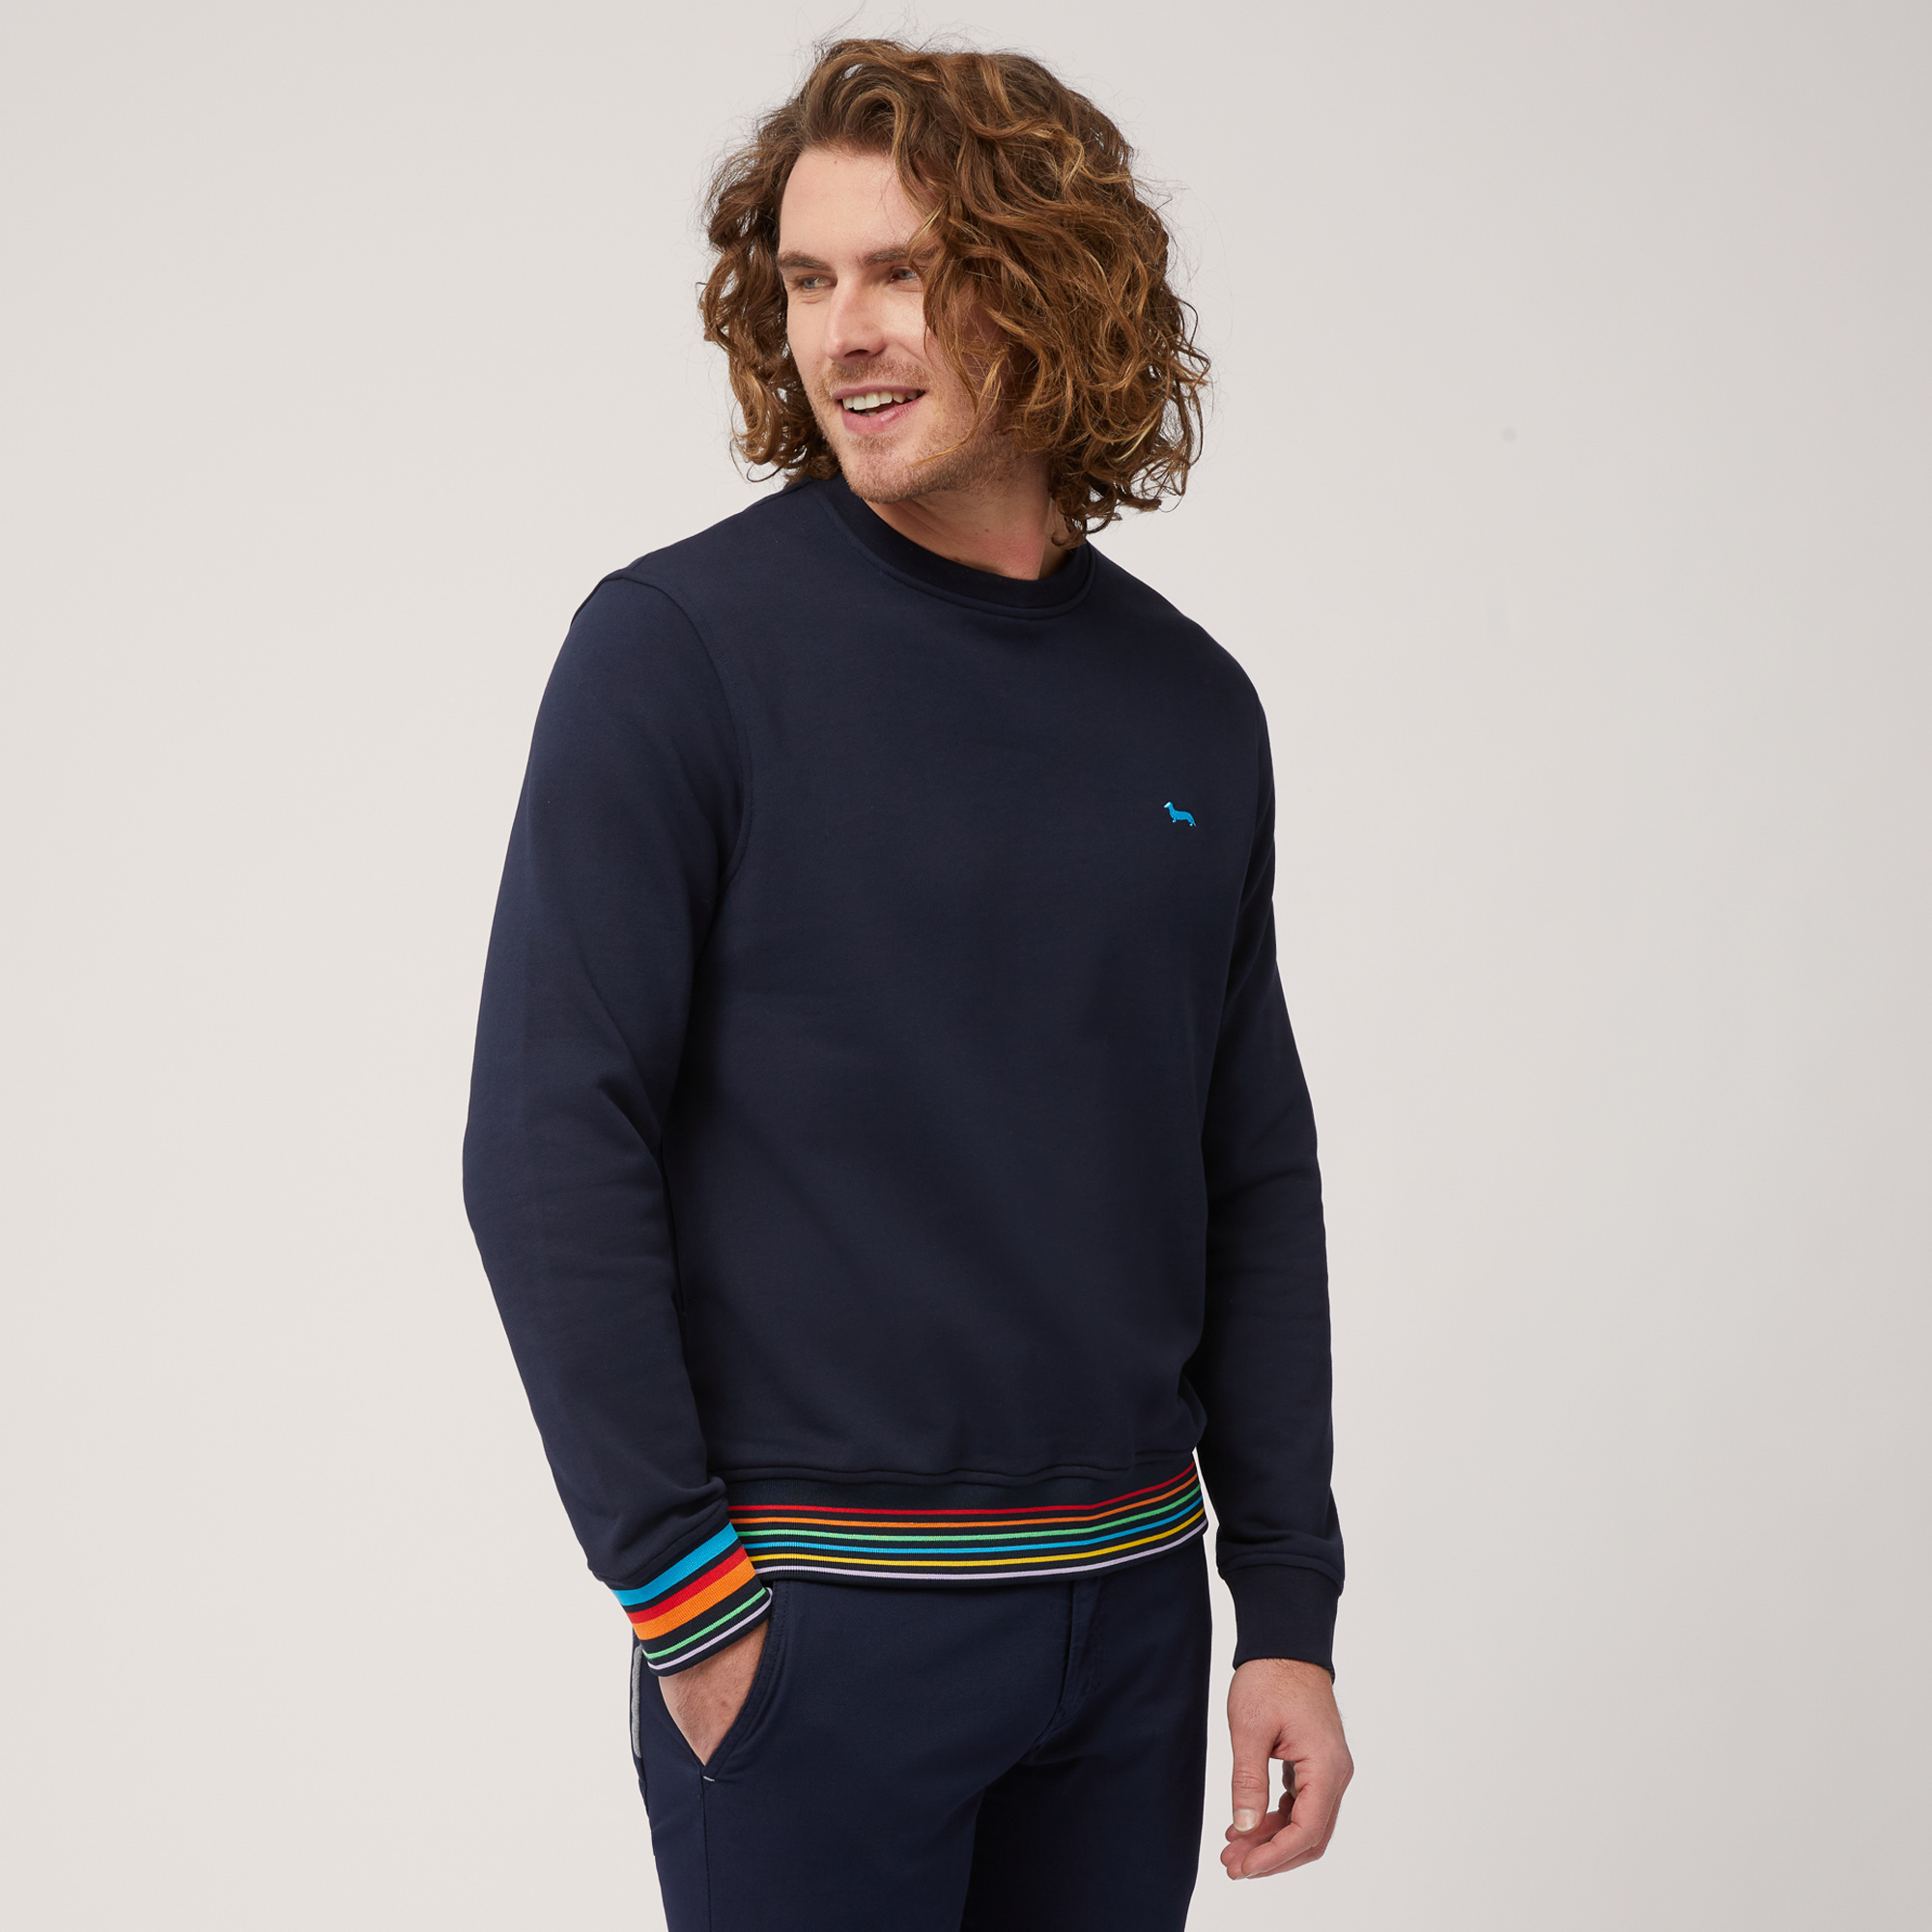 Jersey de algodón con cuello redondo y detalles de rayas, Azul, large